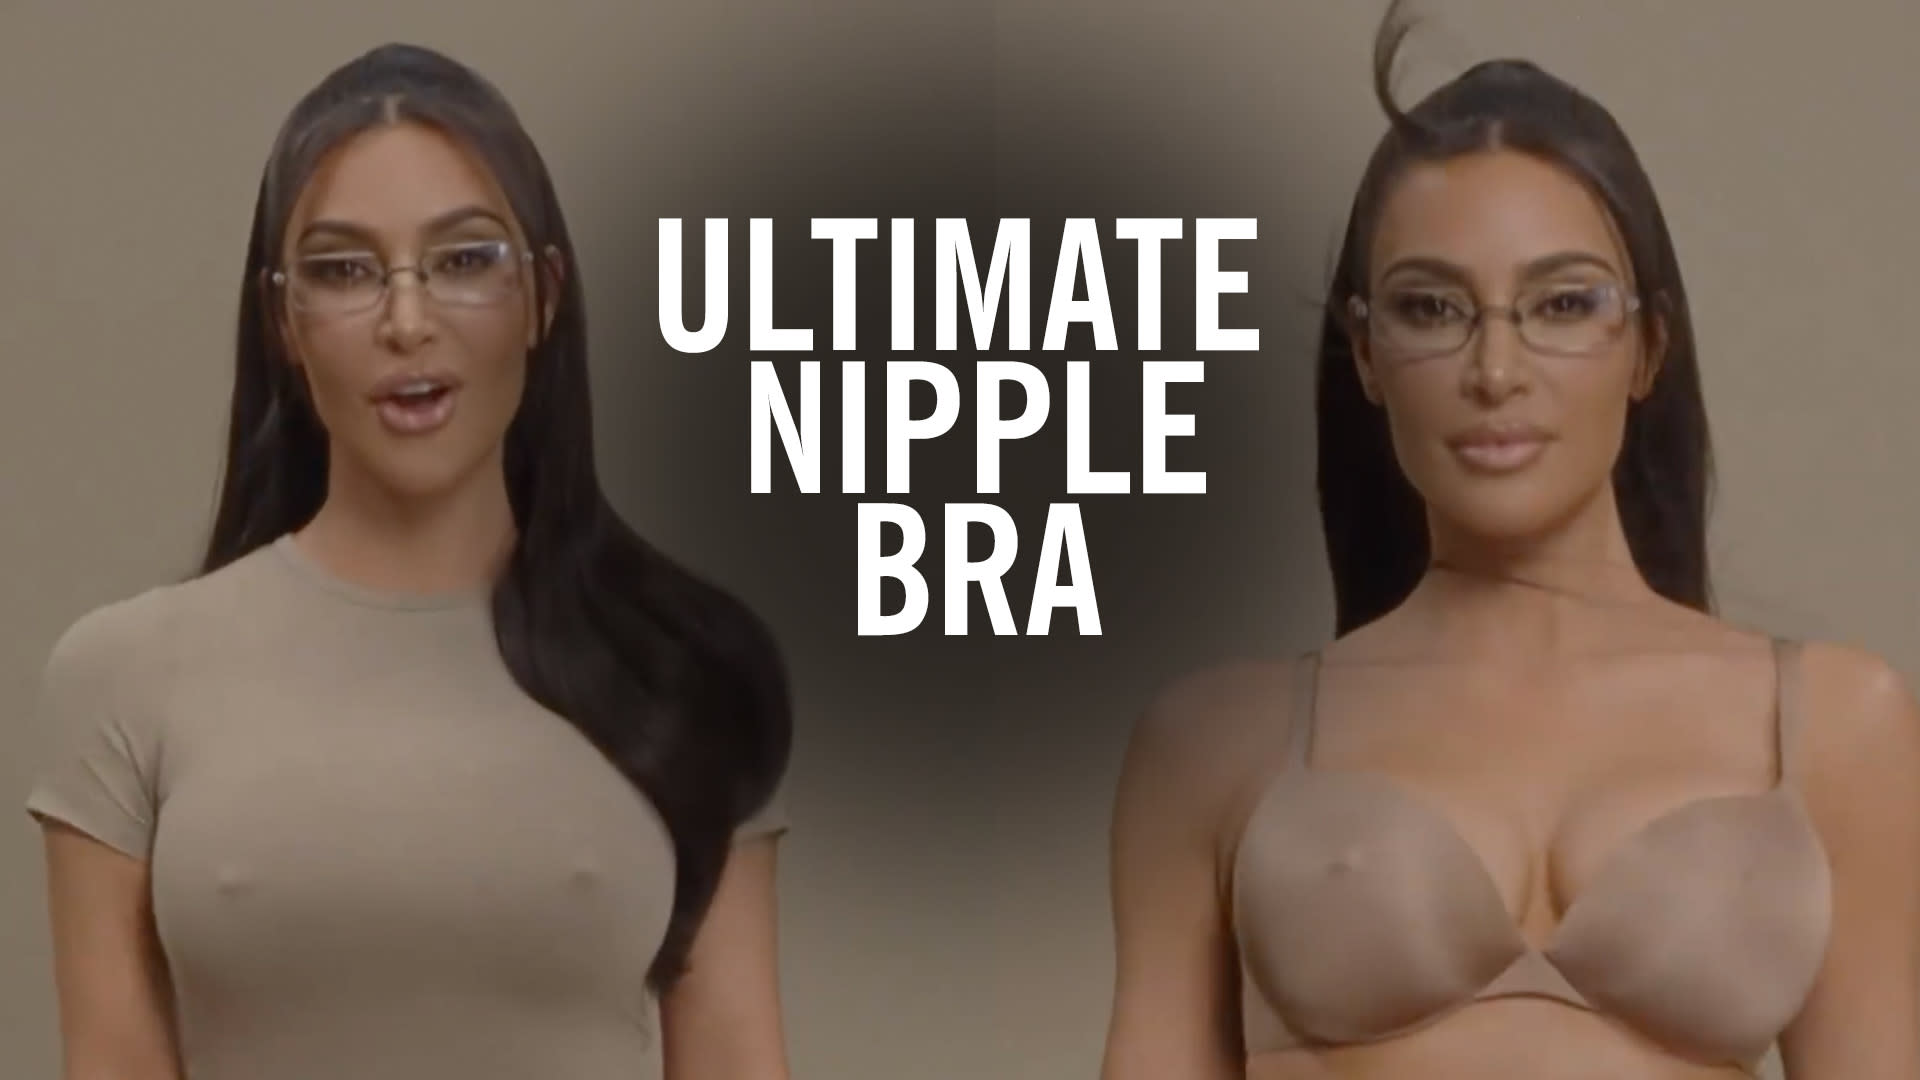 Kim Kardashian Models 'Ultimate Nipple Bra' In New SKIMS Ad: 'You